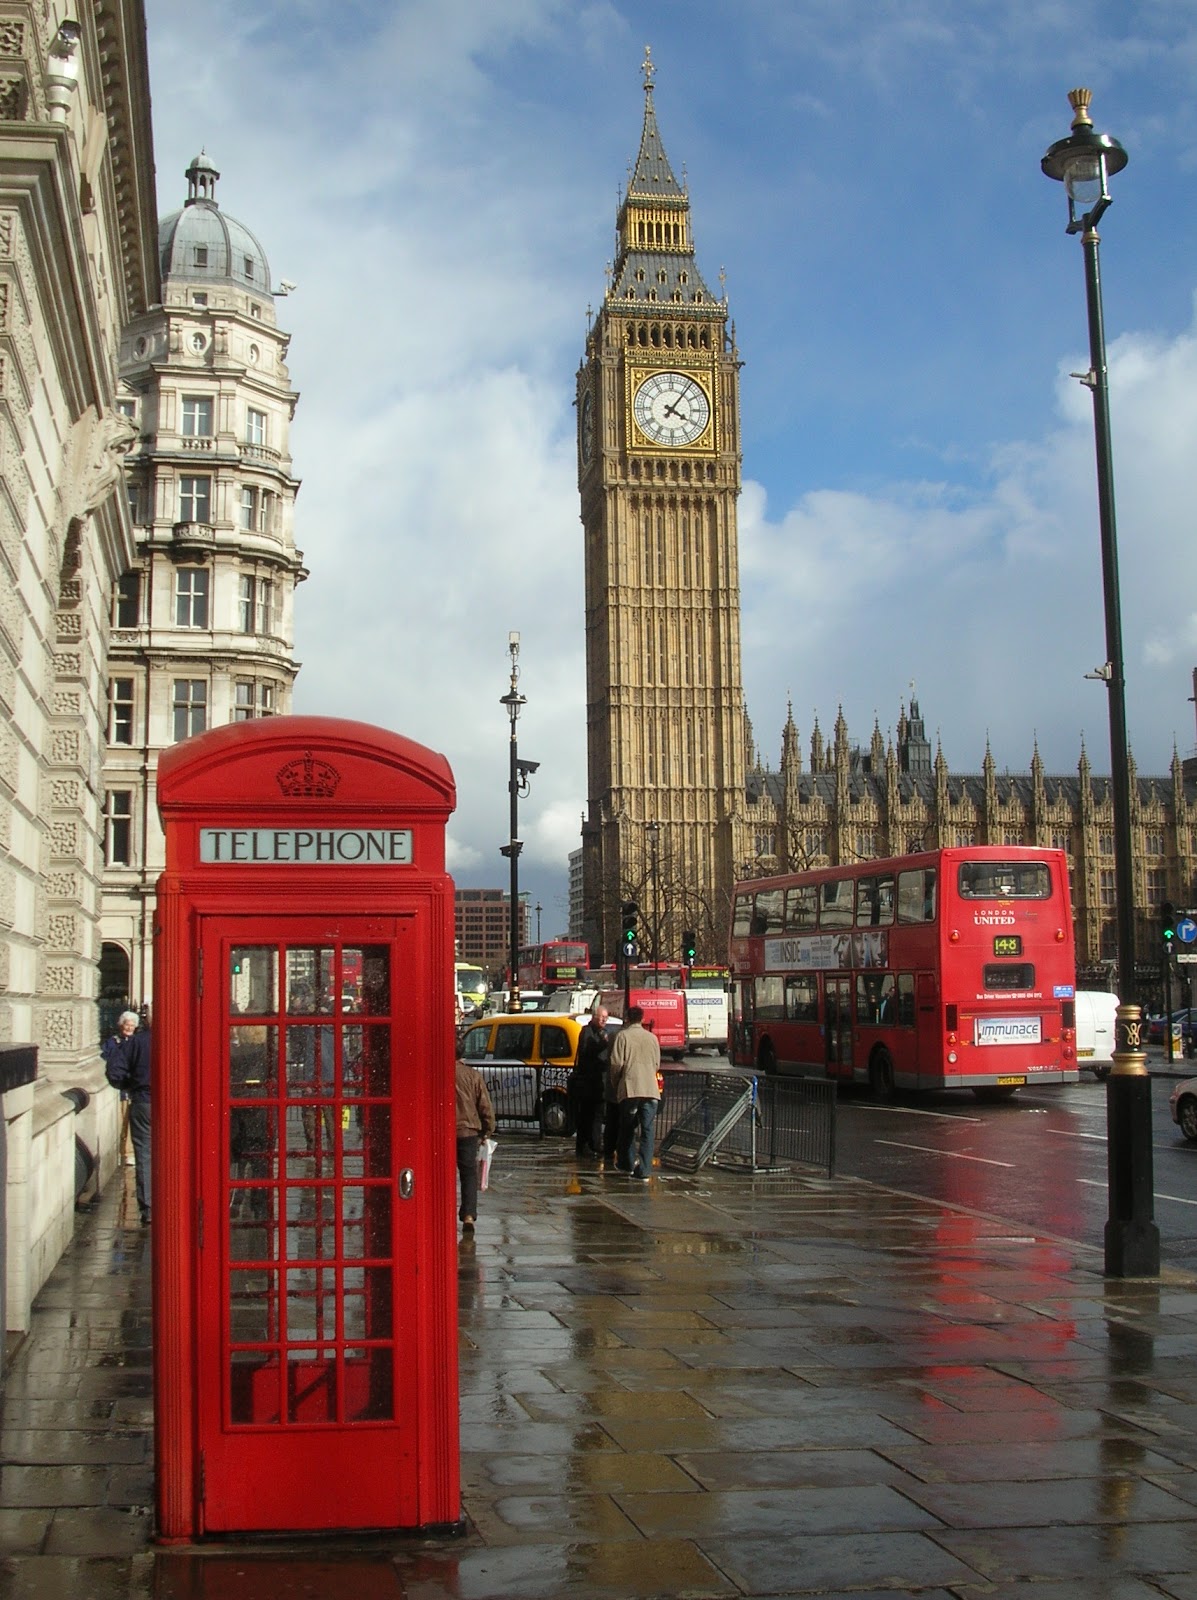 London_Big_Ben_Phone_box.jpg